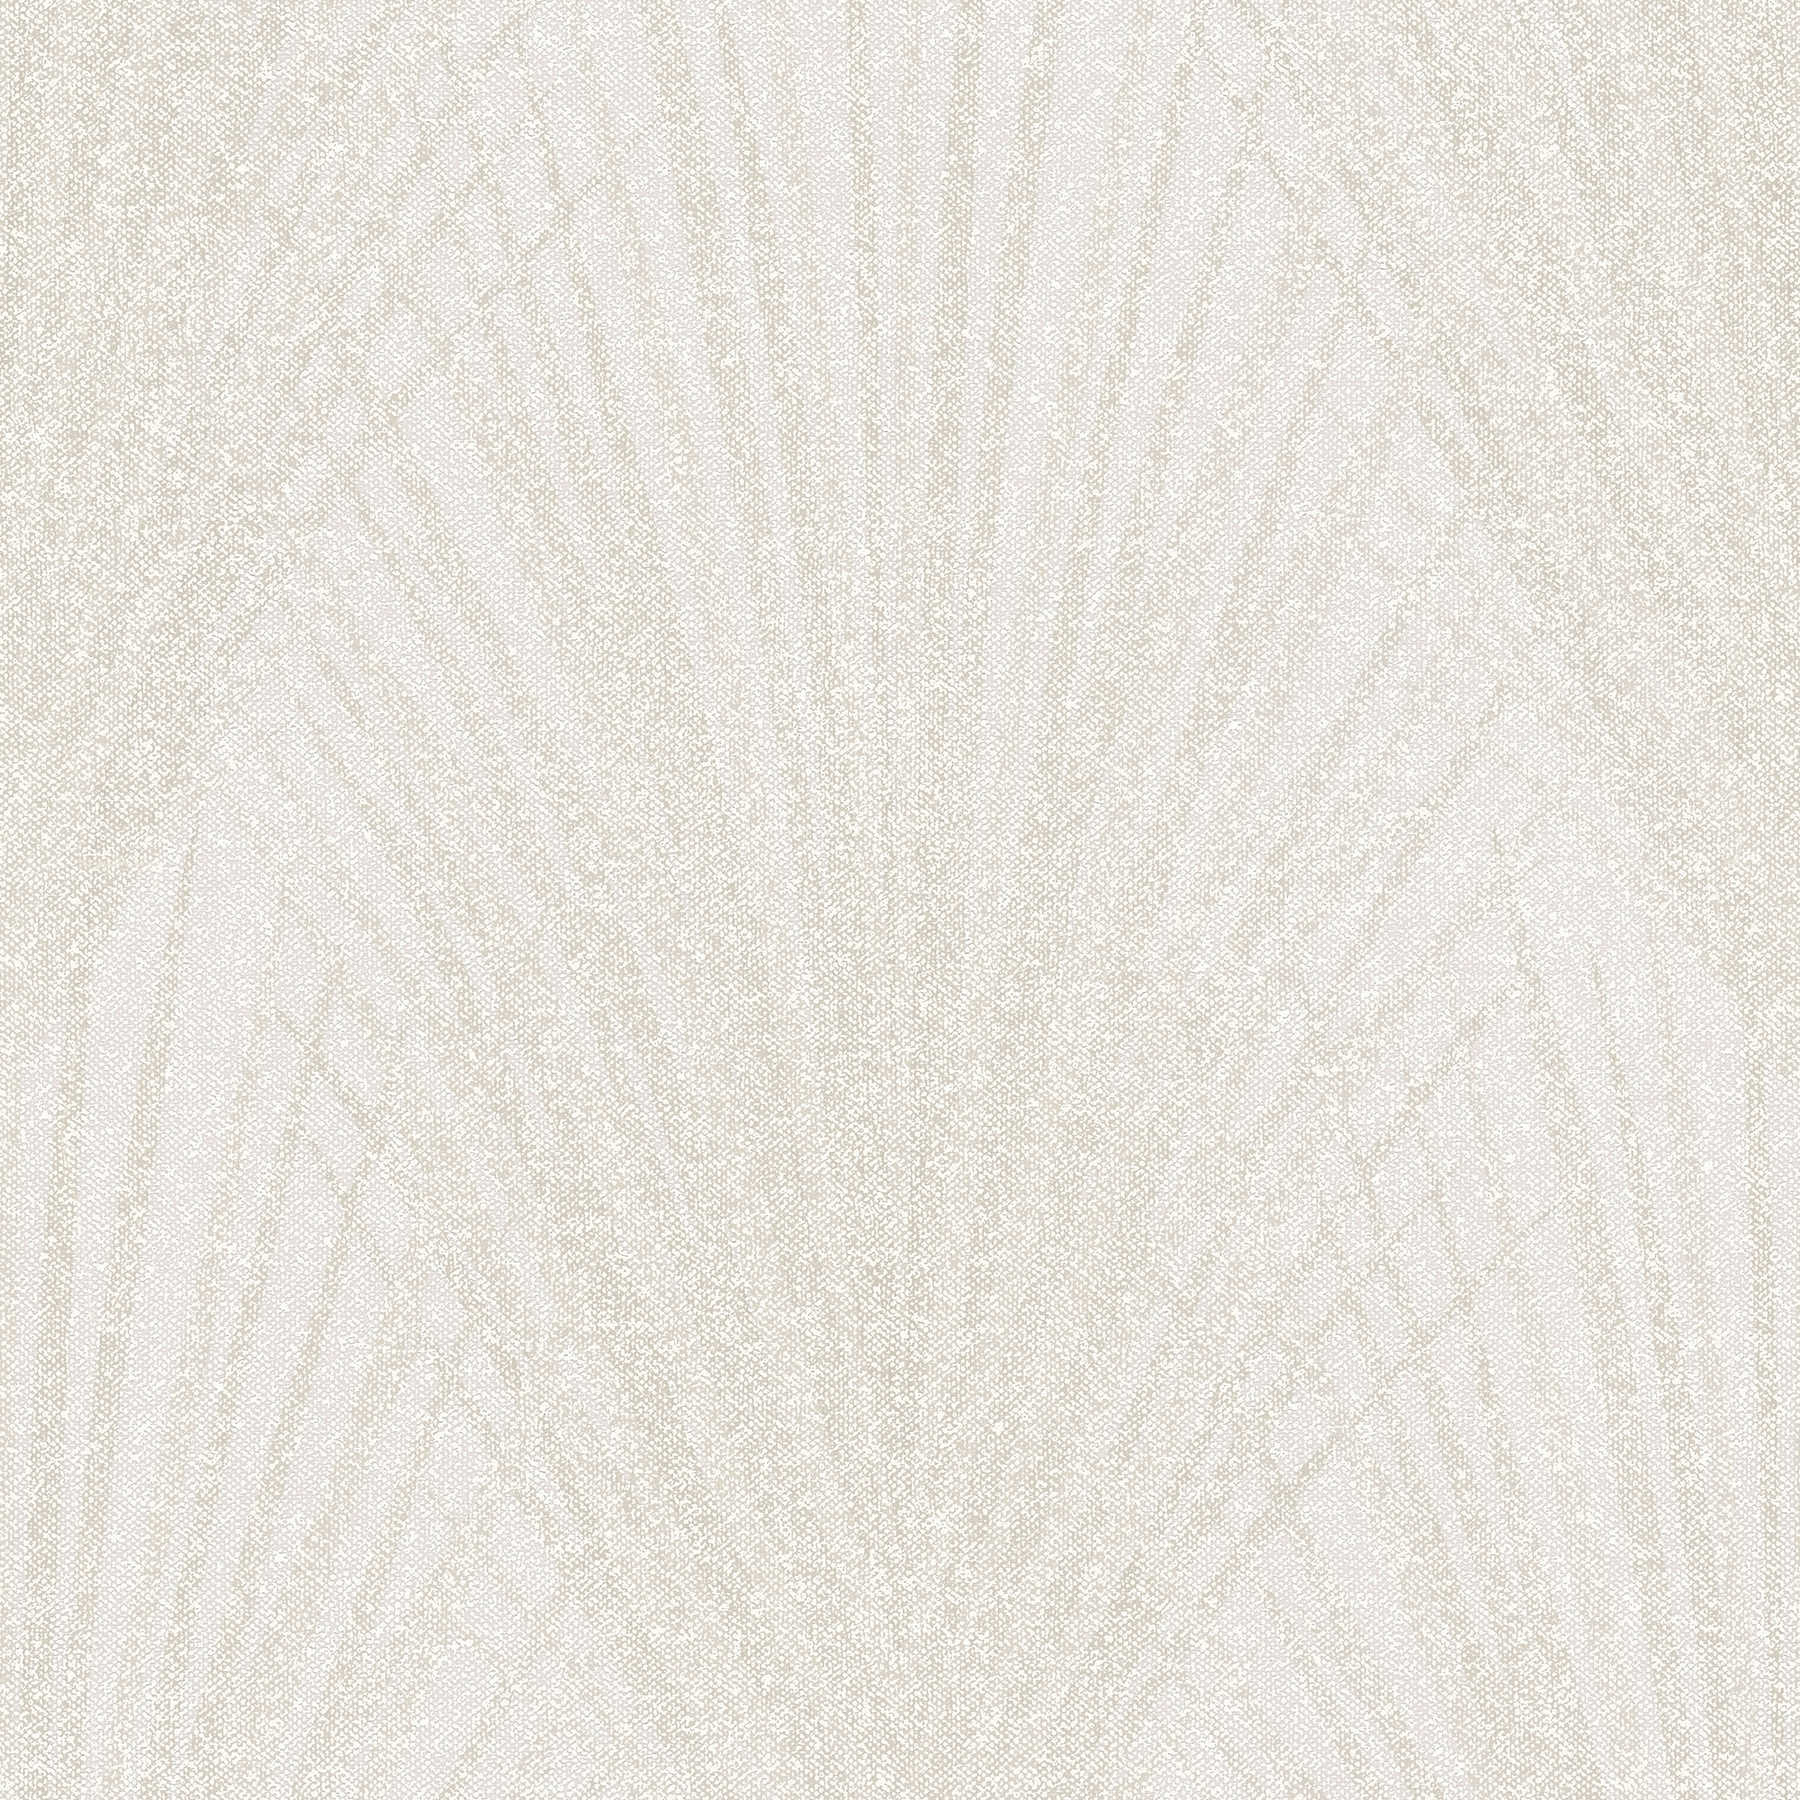         Papel pintado abstracto con diseño de hojas de helecho - crema, beige
    